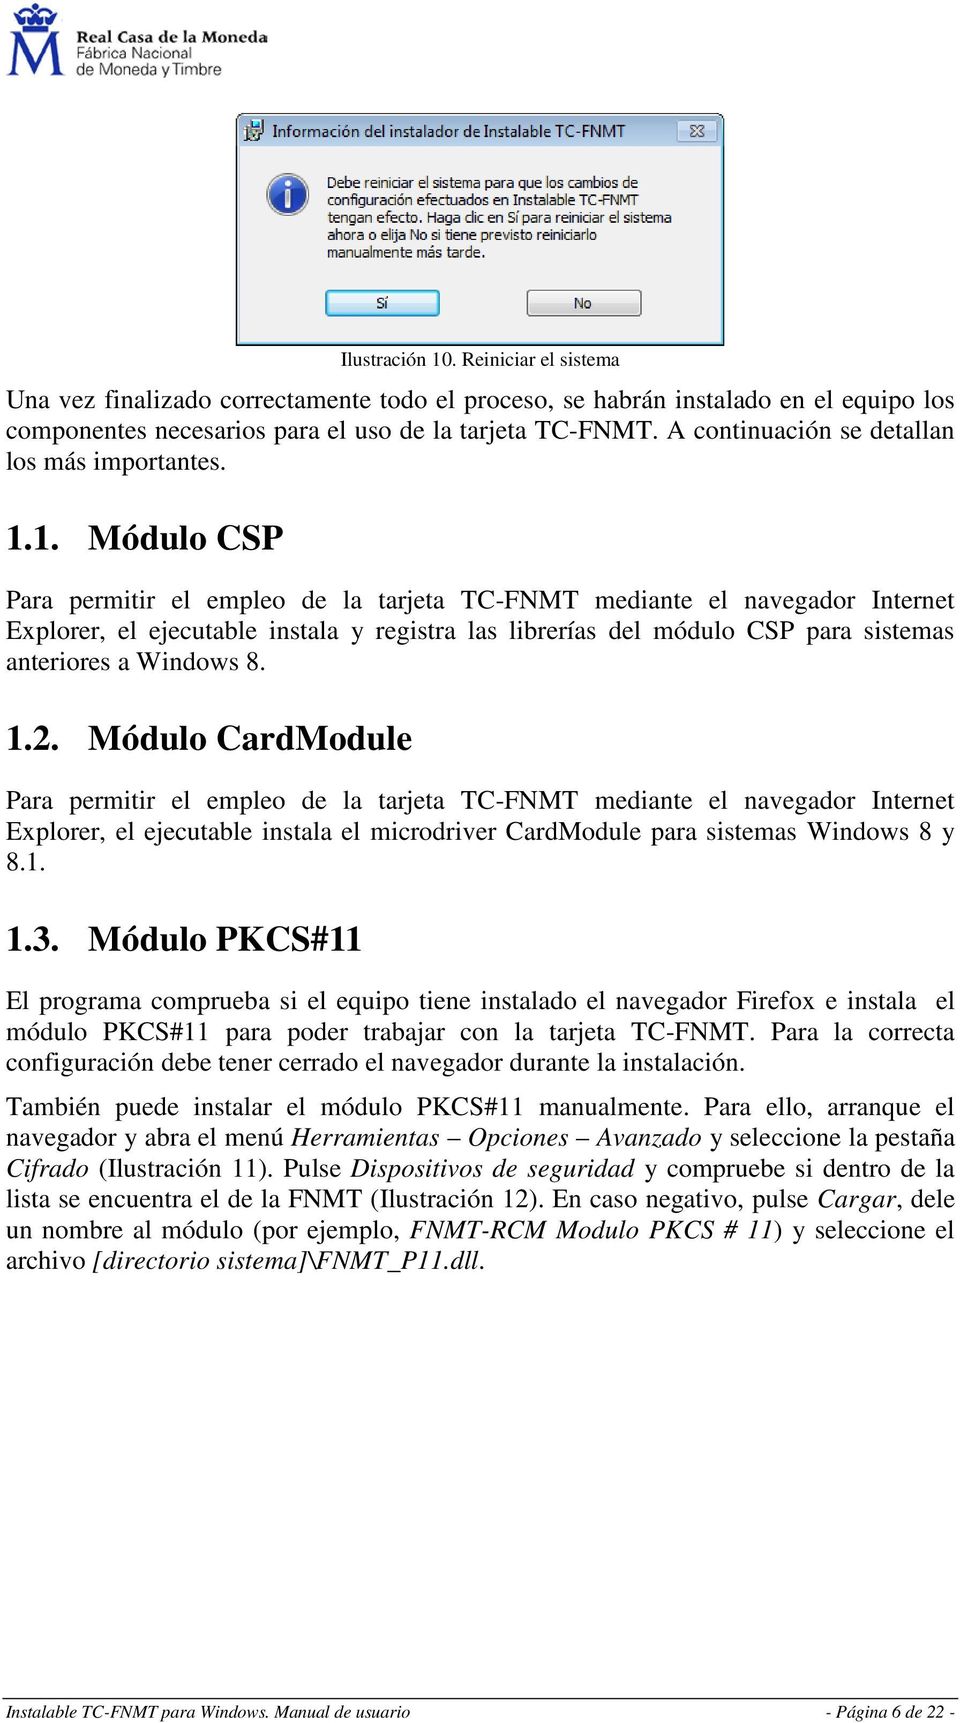 1. Módulo CSP Para permitir el empleo de la tarjeta TC-FNMT mediante el navegador Internet Explorer, el ejecutable instala y registra las librerías del módulo CSP para sistemas anteriores a Windows 8.